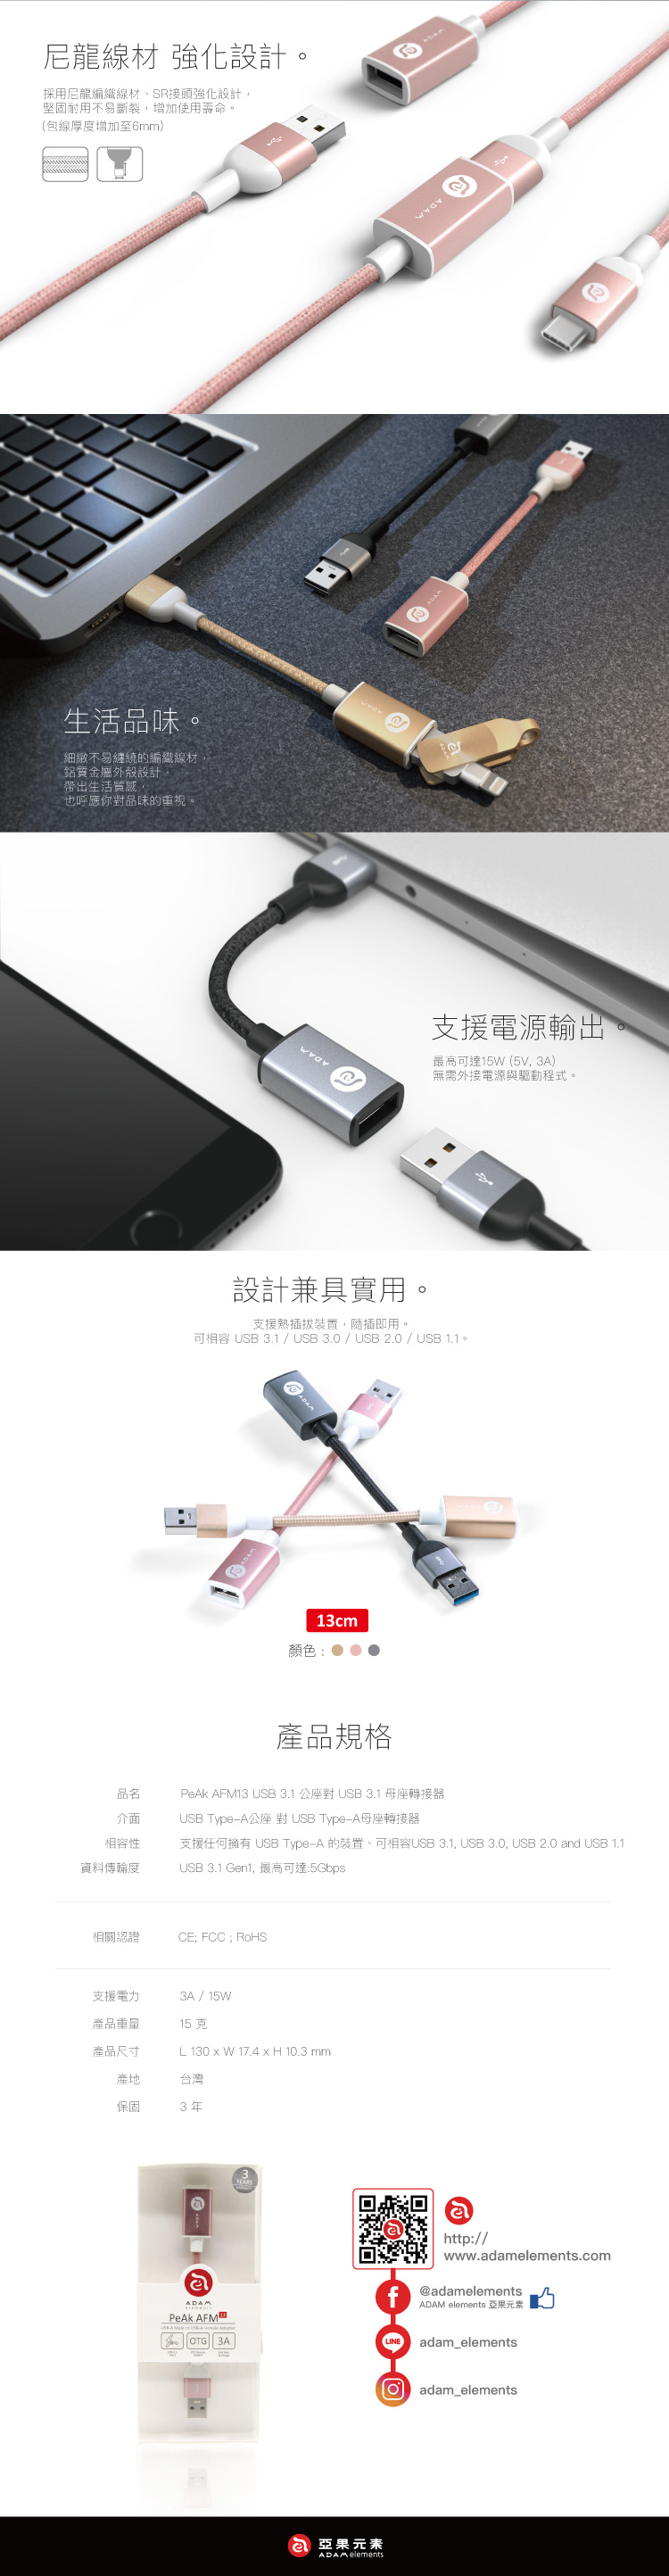 亞果元素 PeAk AFM13 USB3.1 公座對 USB3.1 母座轉接器 13cm( 玫瑰金)